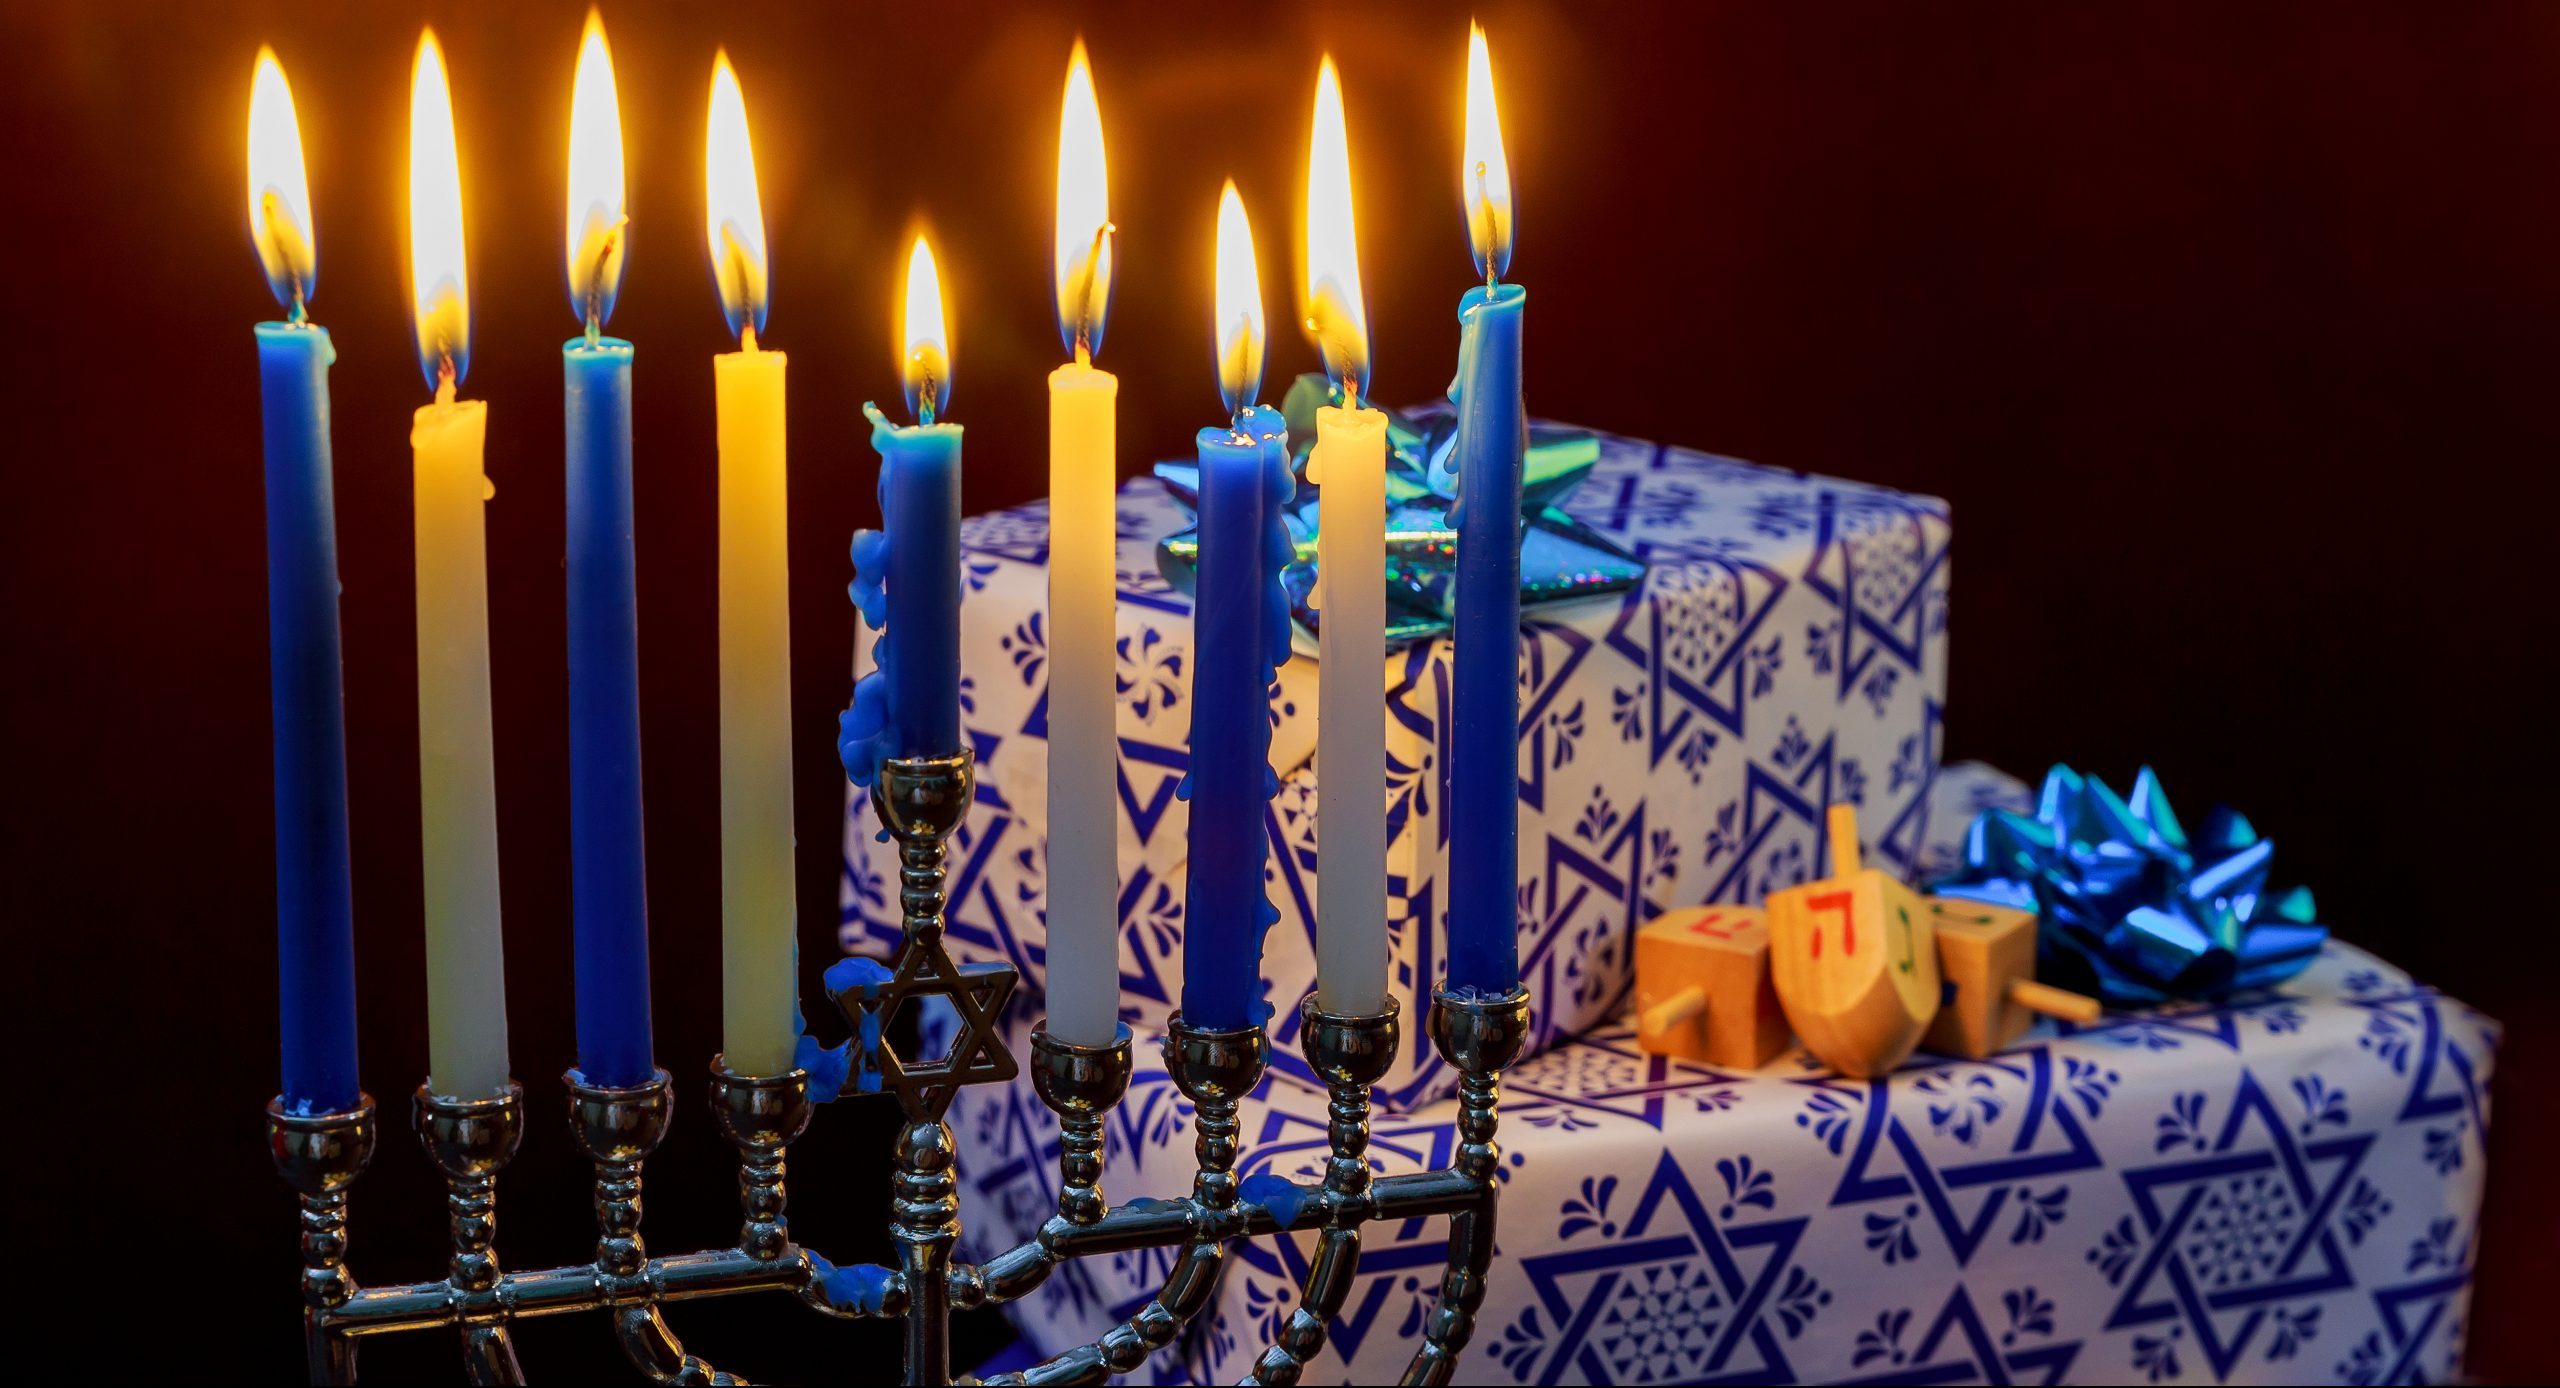 Jewish Holiday Hanukkah holiday with menorah burning candles.